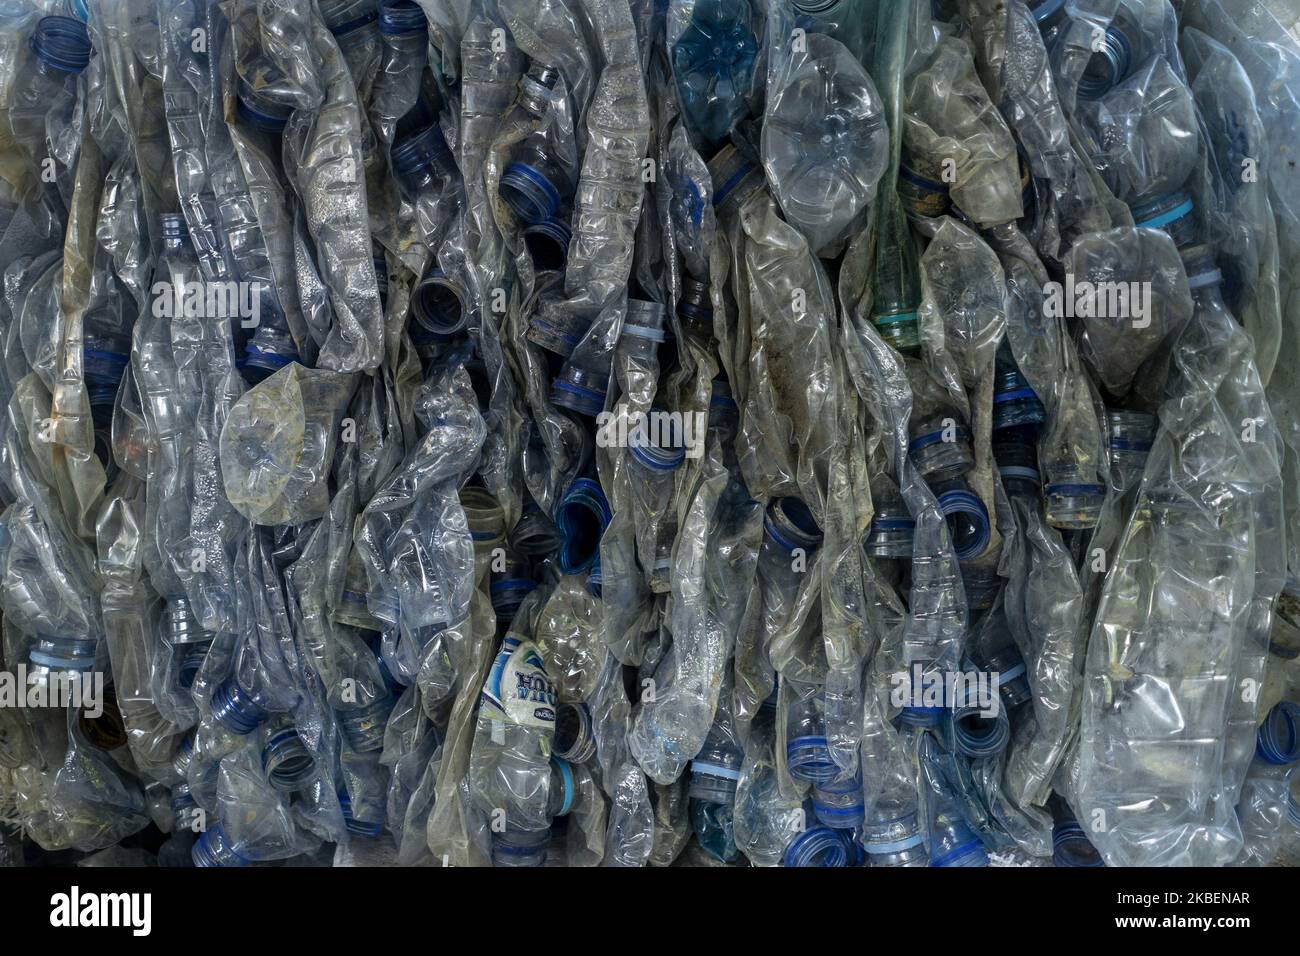 Pile di bottiglie di plastica usate si trovano nella zona della banca dei rifiuti della scuola islamica di Lhokseumawe, provincia di Aceh, Indonesia il 16 gennaio 2020. Le scuole islamiche d'imbarco acquistano vari tipi di rifiuti che possono essere riciclati nelle bancarelle, e anche dai recuperatori nelle discariche. Fino al 30% dei rifiuti proviene da scuole islamiche che vengono poi raccolte dagli studenti per essere riciclate. Sperando che con una banca dei rifiuti nelle scuole islamiche di Aceh, l'Indonesia sarà esente da inquinamento da rifiuti. (Foto di Zick Maulana/NurPhoto) Foto Stock